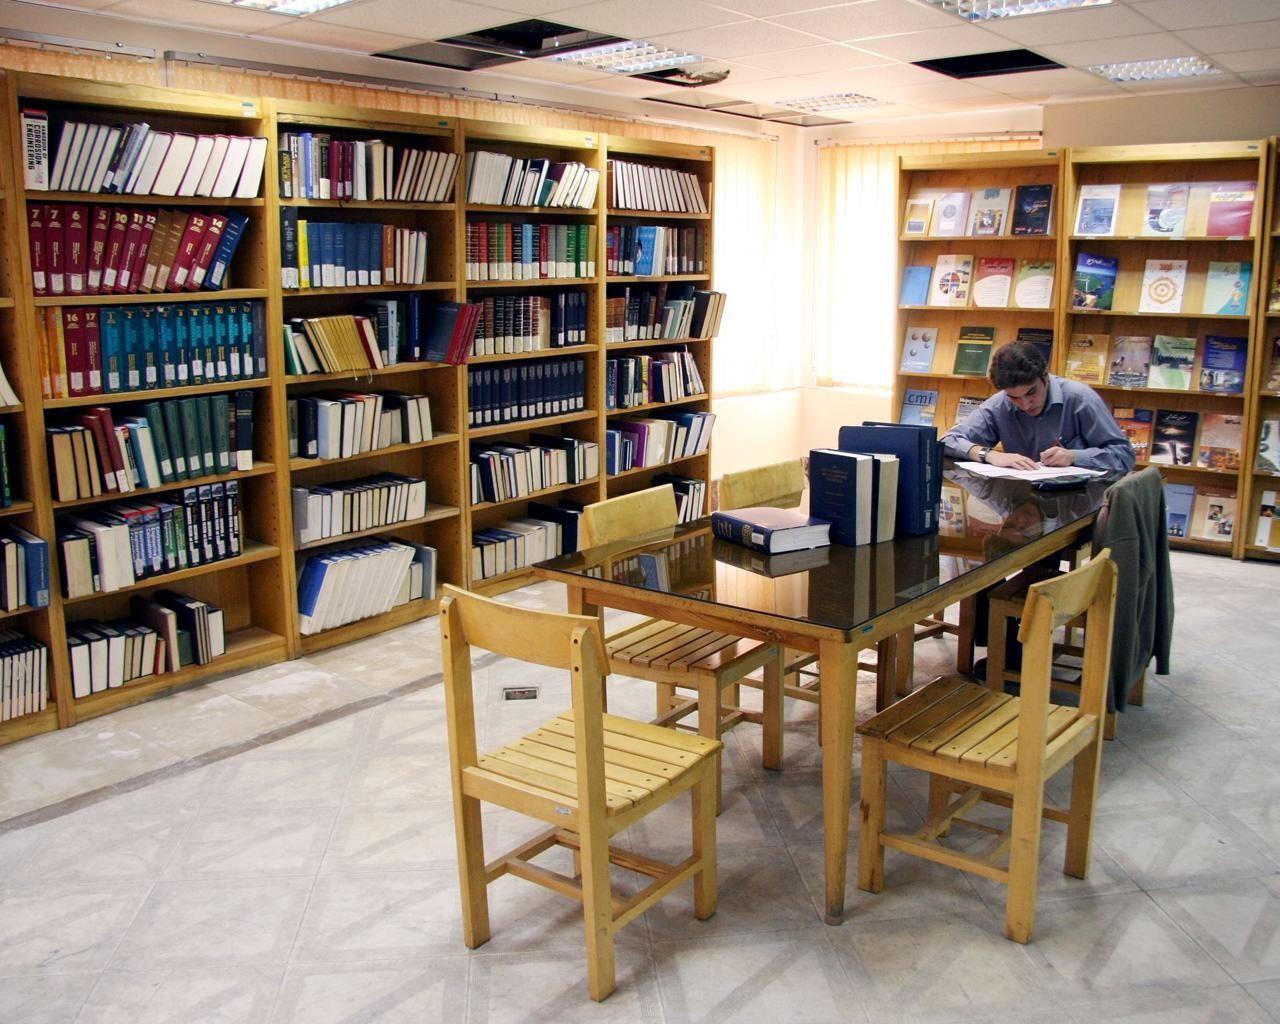 استان تهران فاقد یک کتابخانه مرکزی درخور است